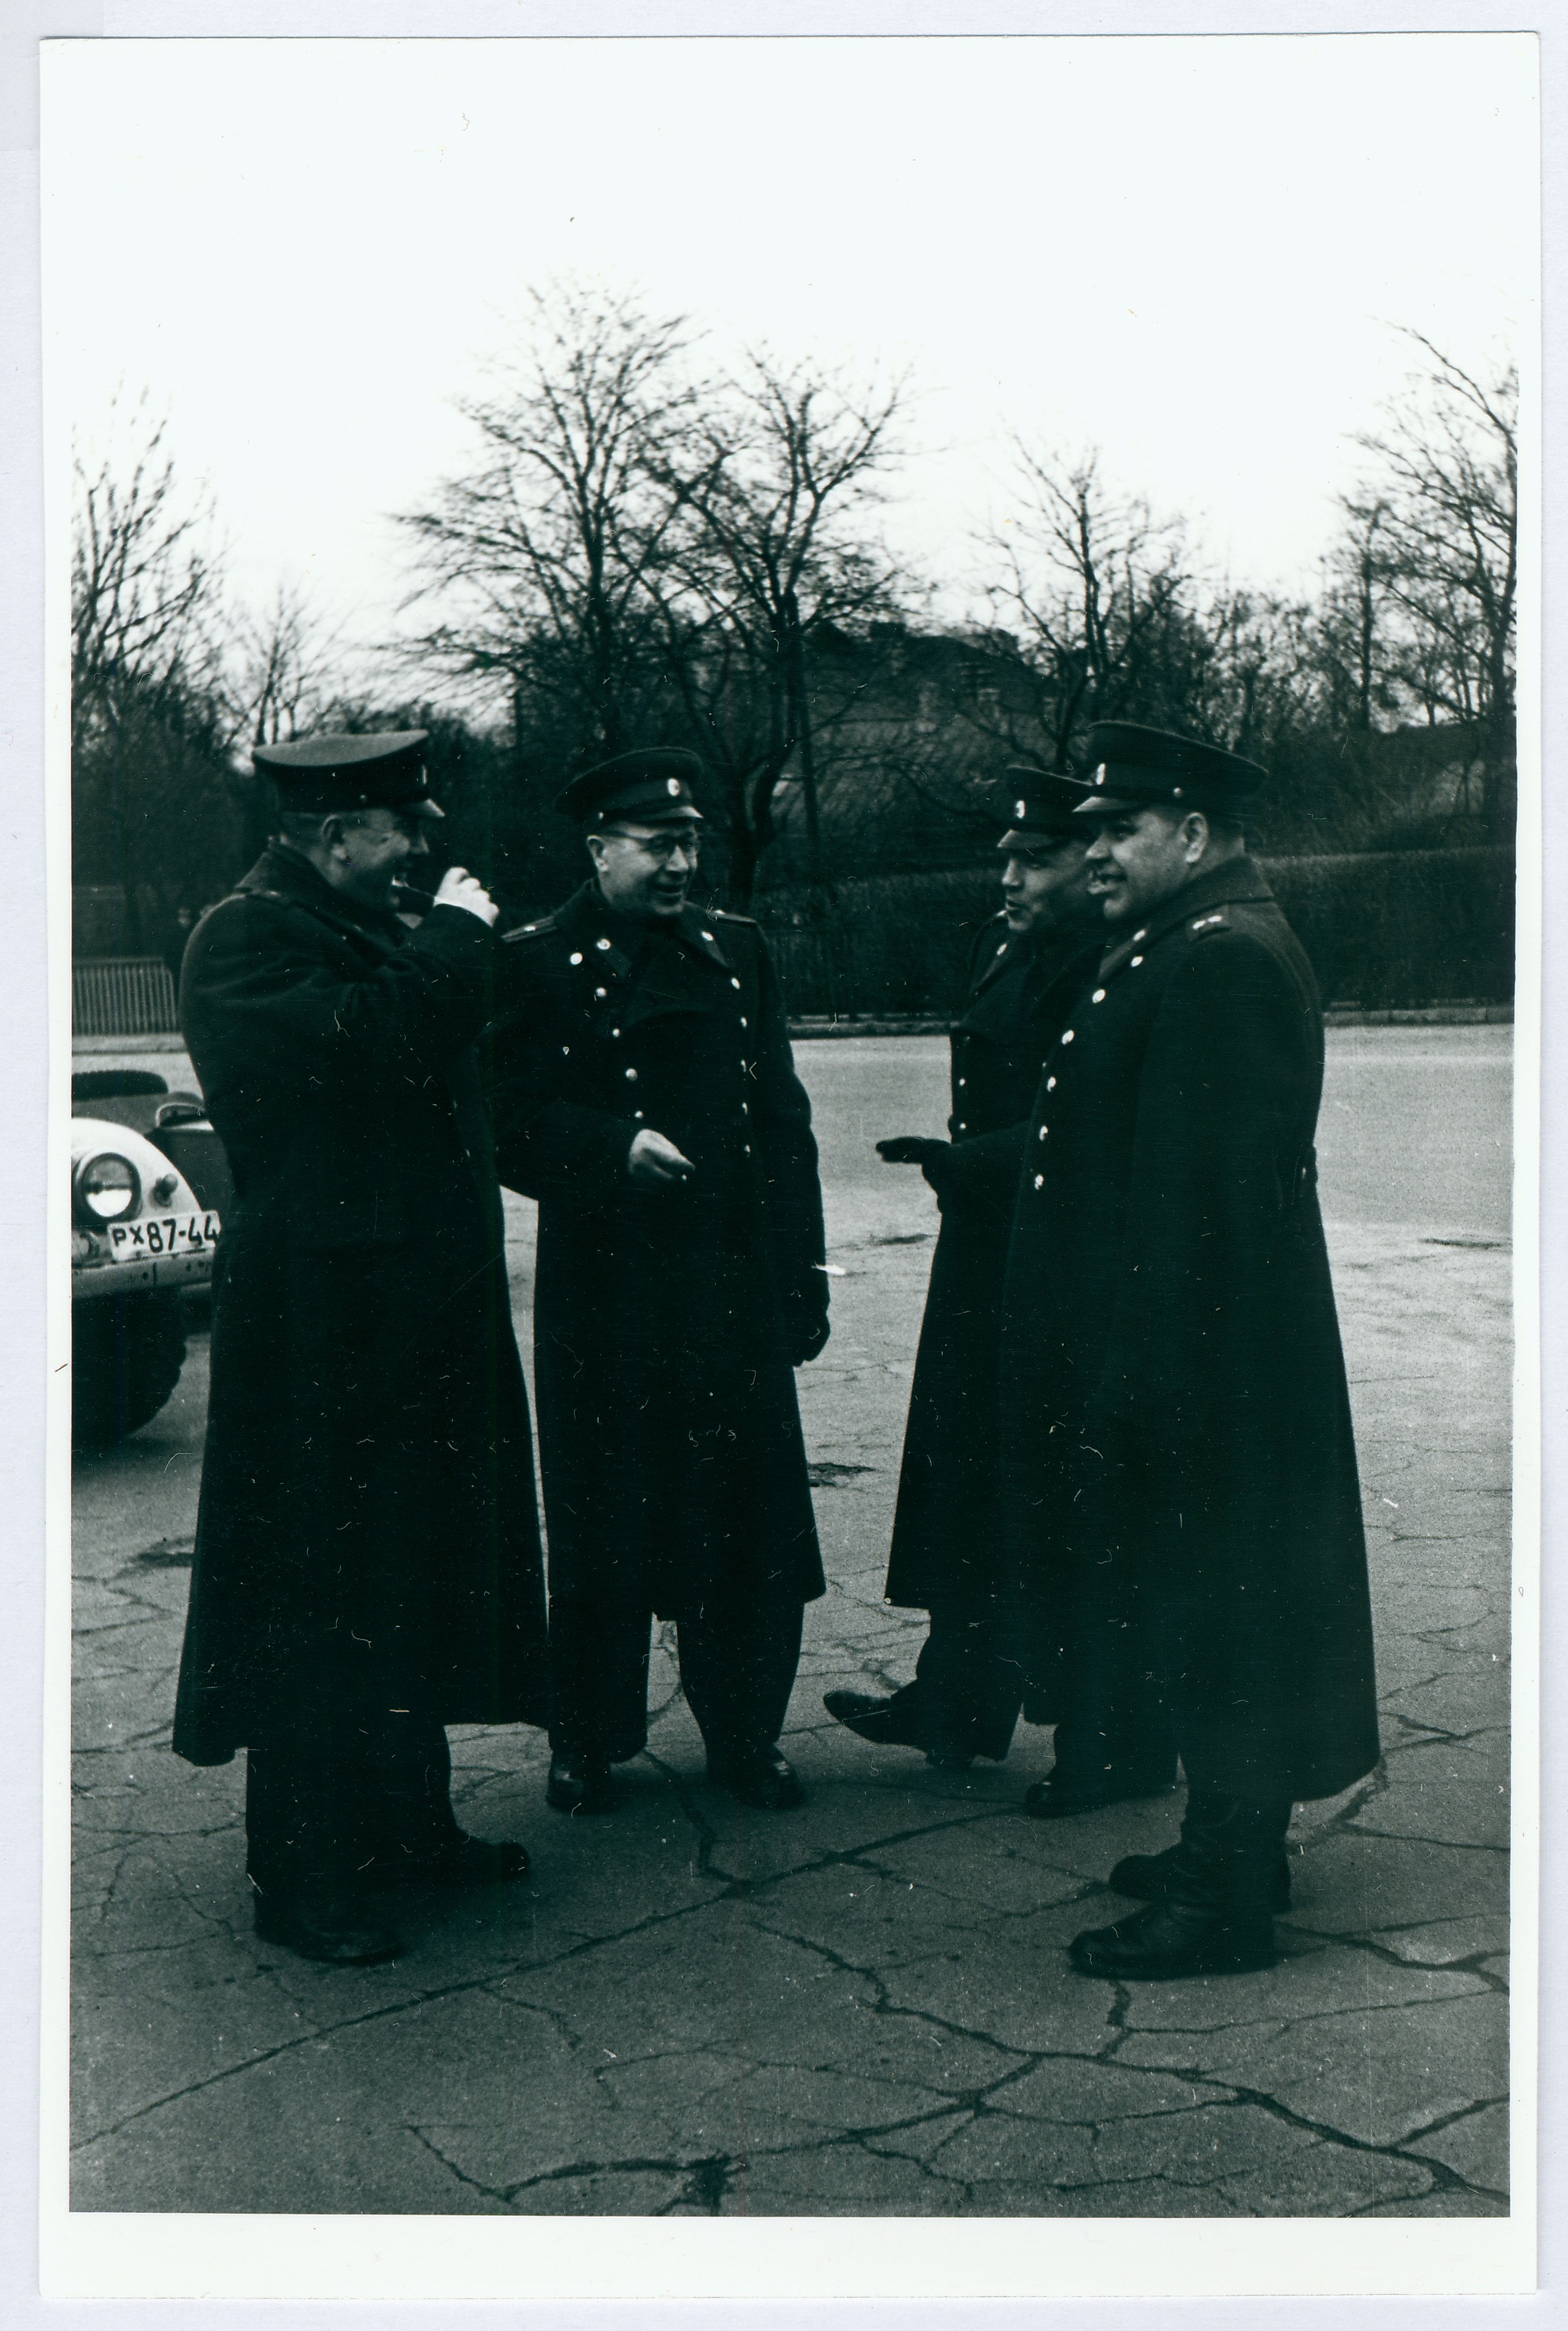 Tuletõrjeüksuste teatejooksul, ülemused omavahel 1960